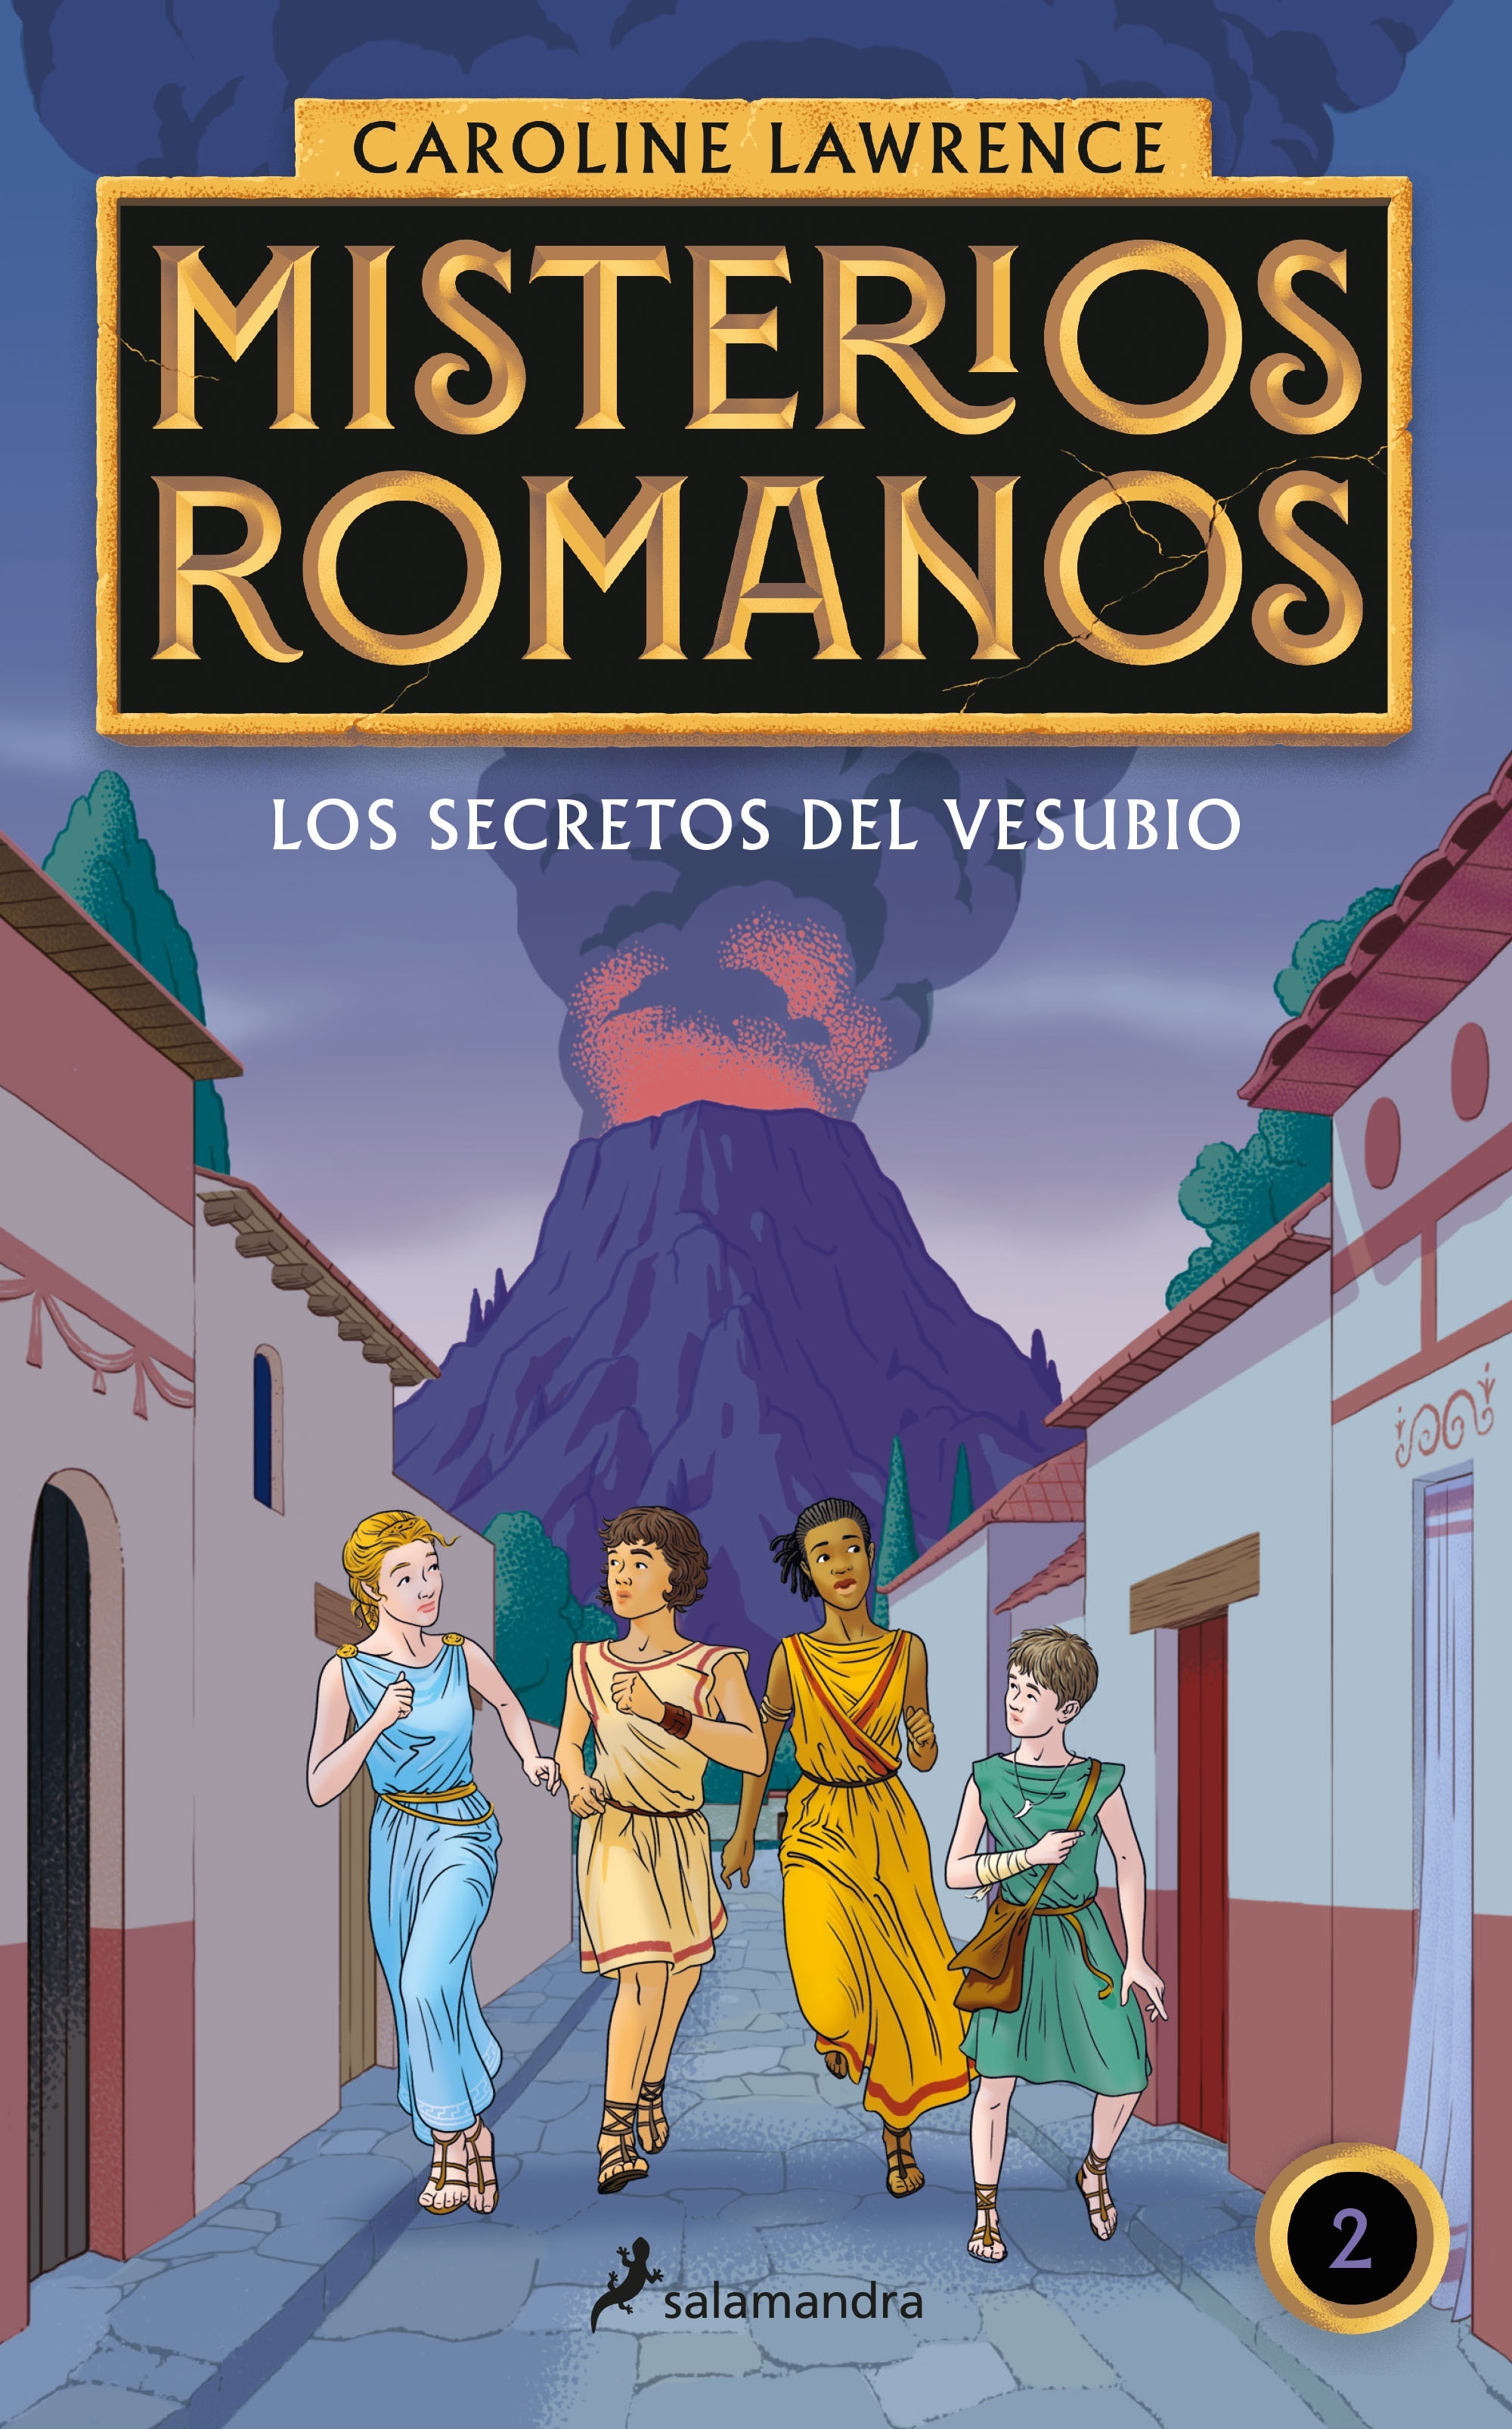 Secretos del Vesubio, Los "Misterios romanos II". 